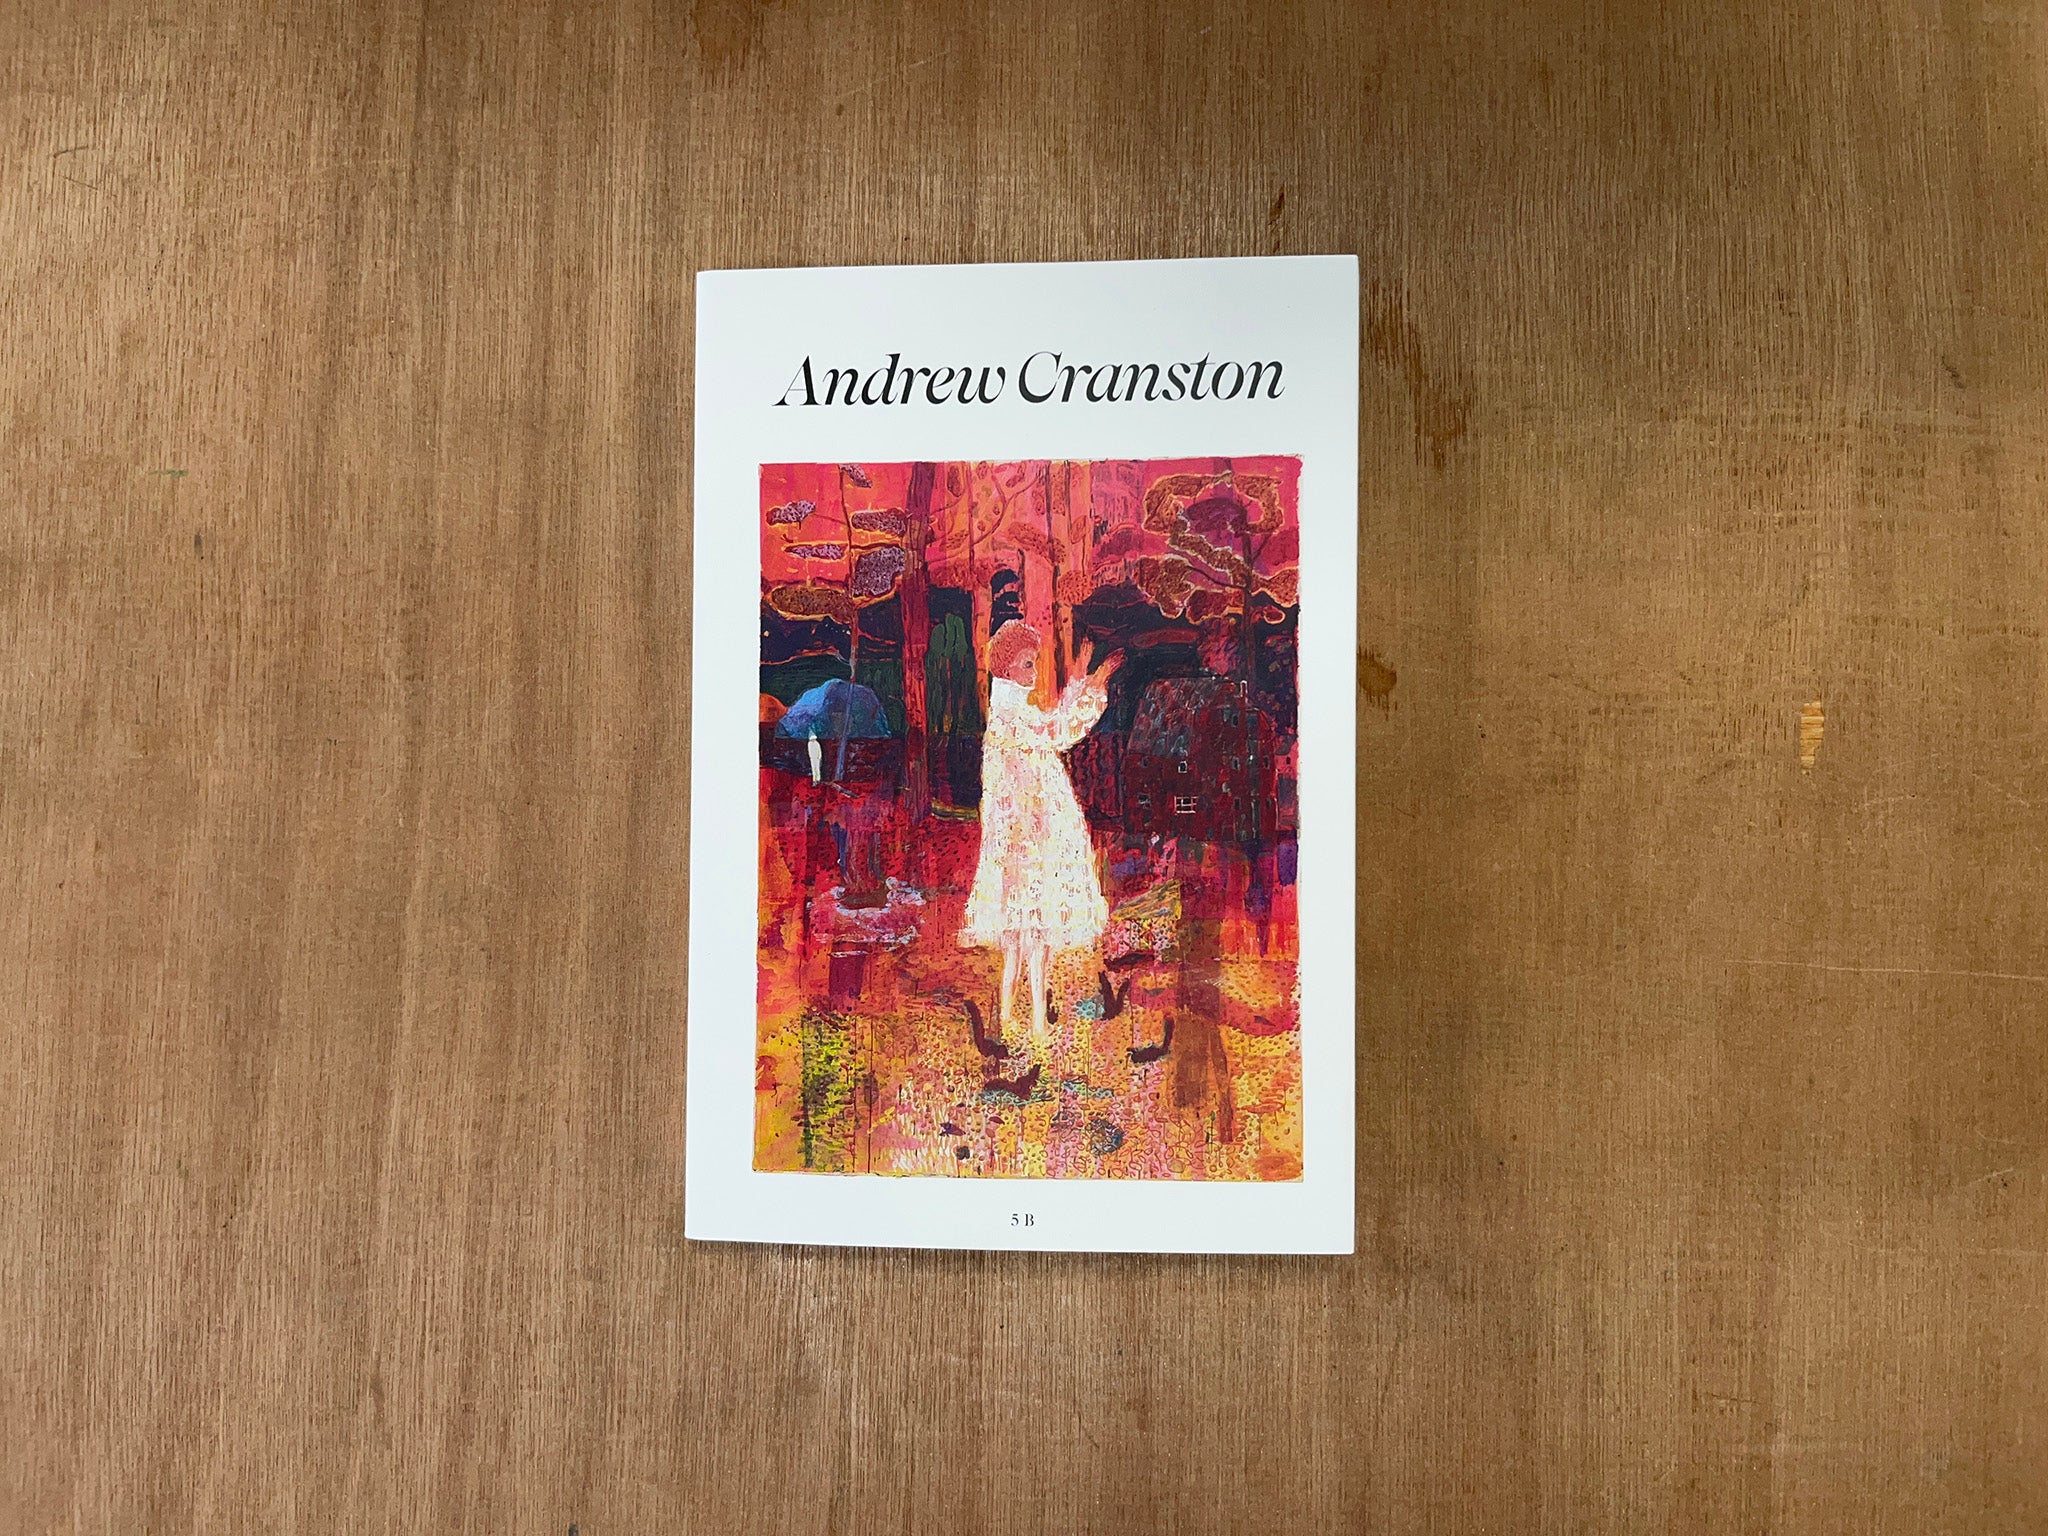 ANDREW CRANSTON by Andrew Cranston